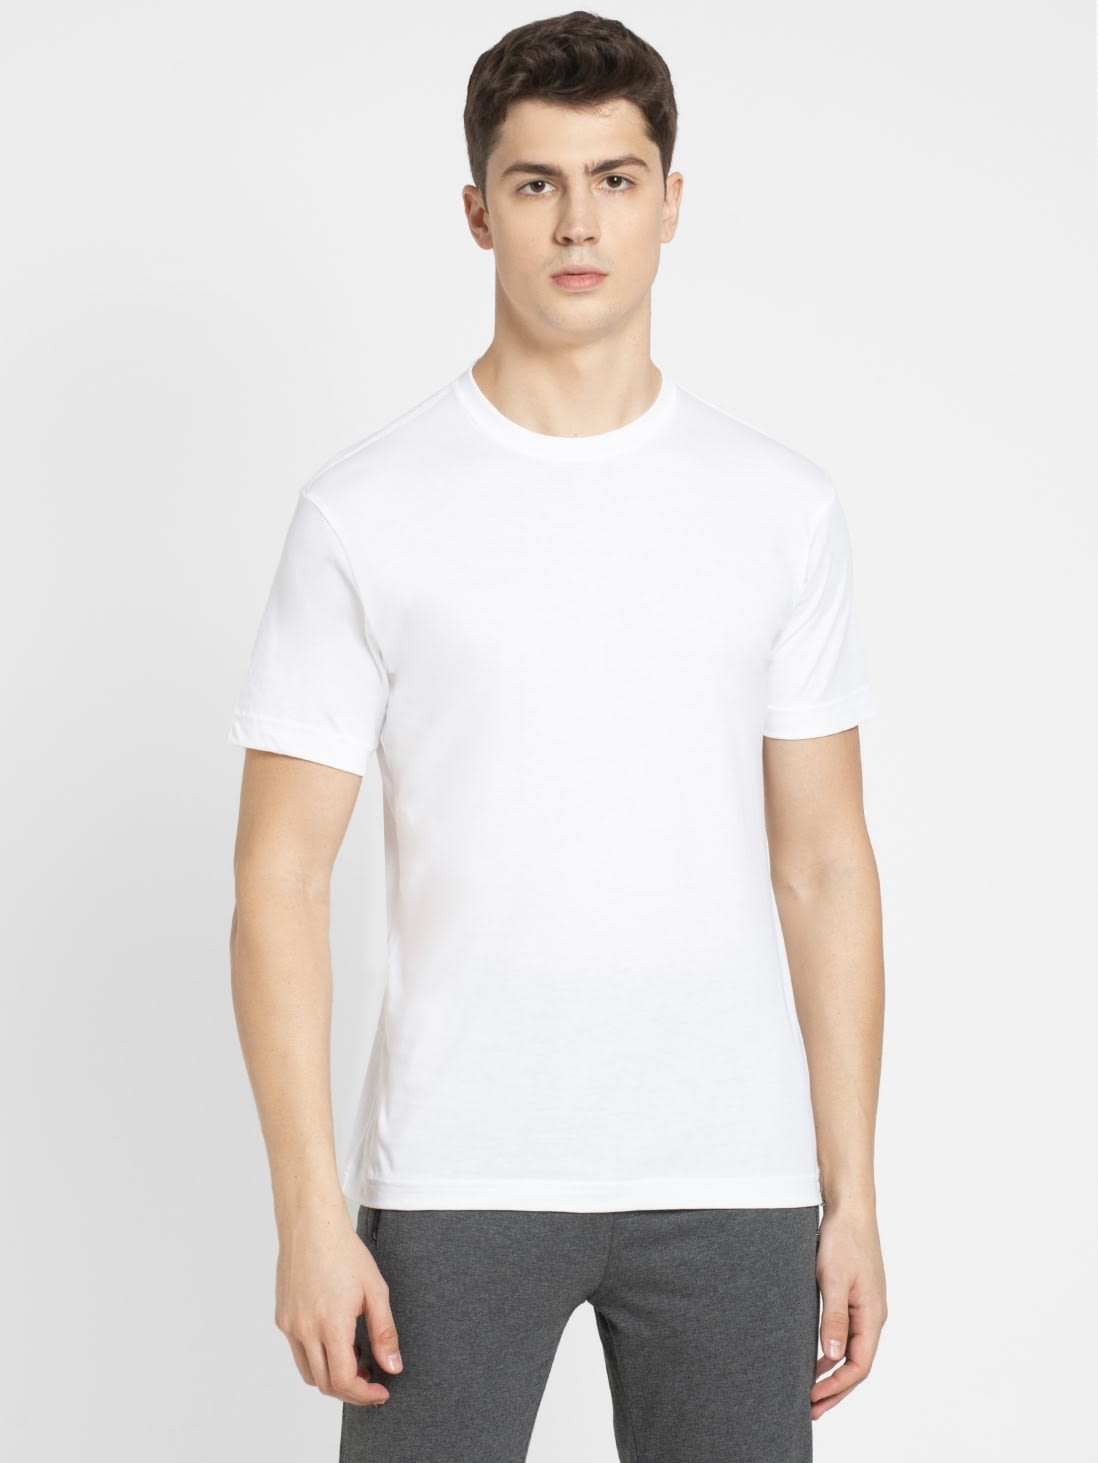 sport t shirt white